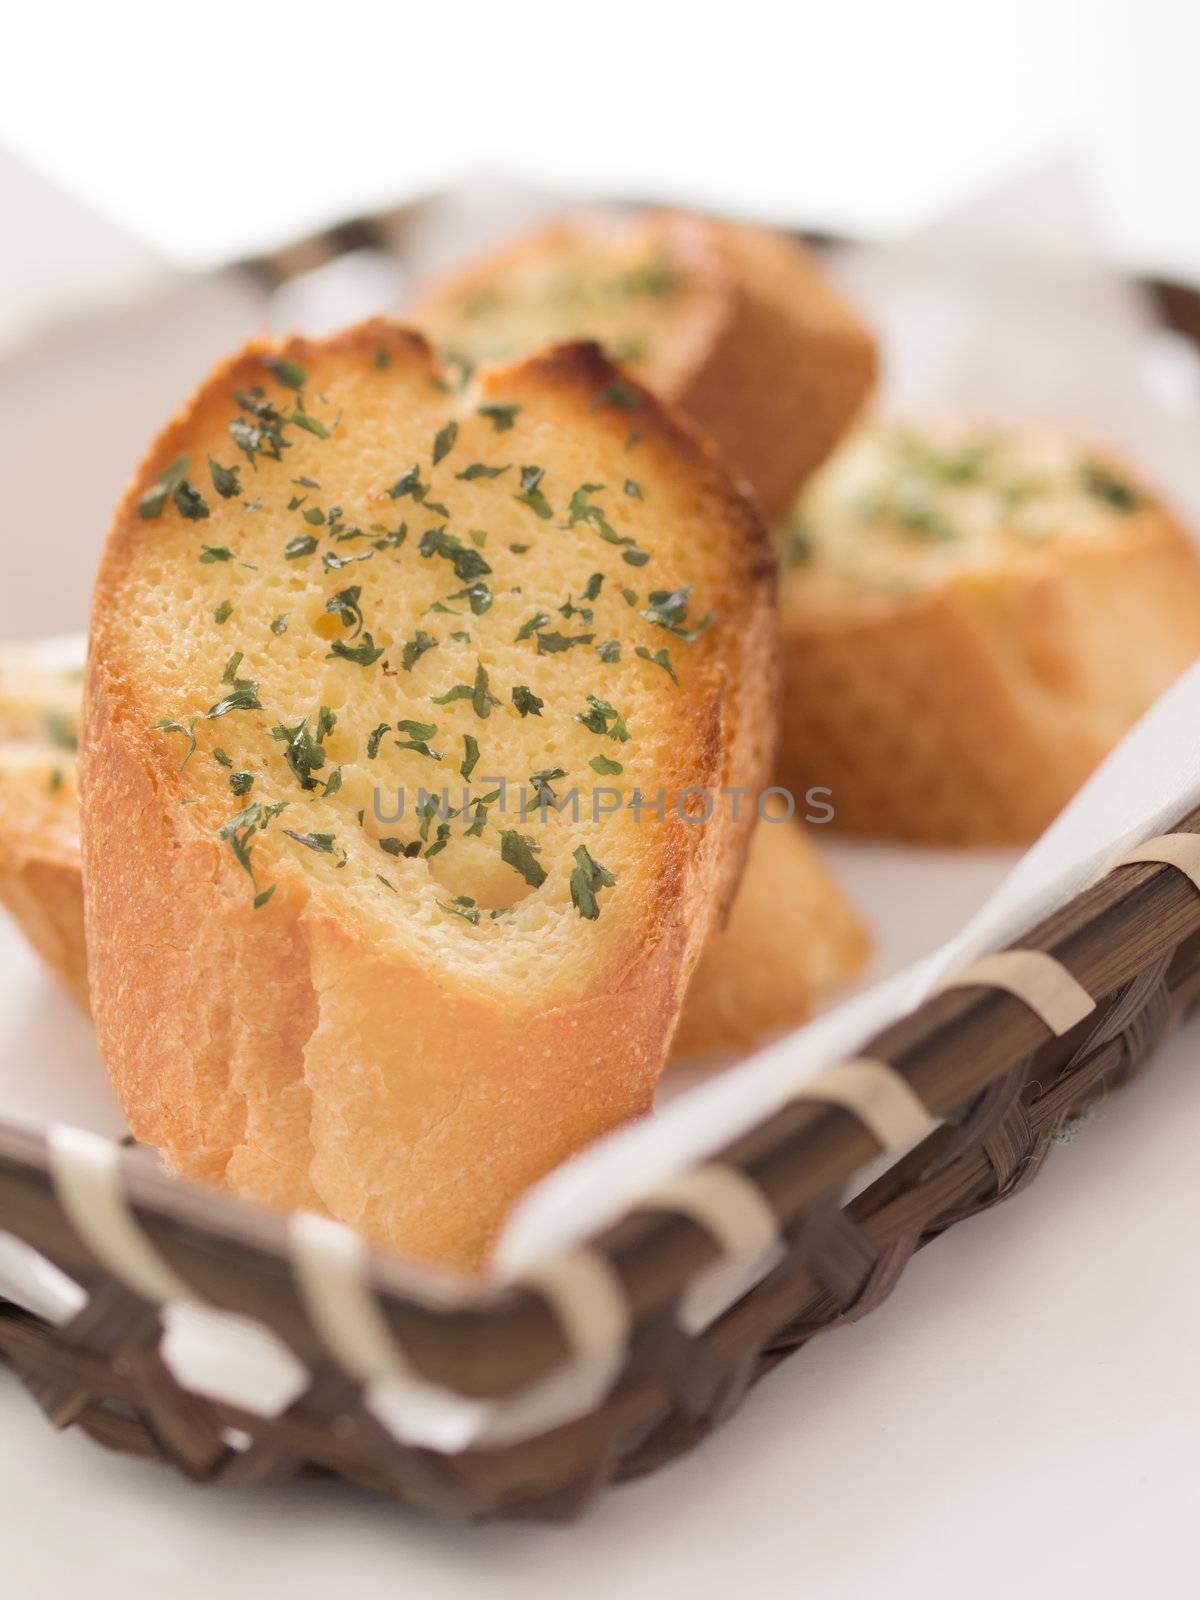 garlic bread by zkruger